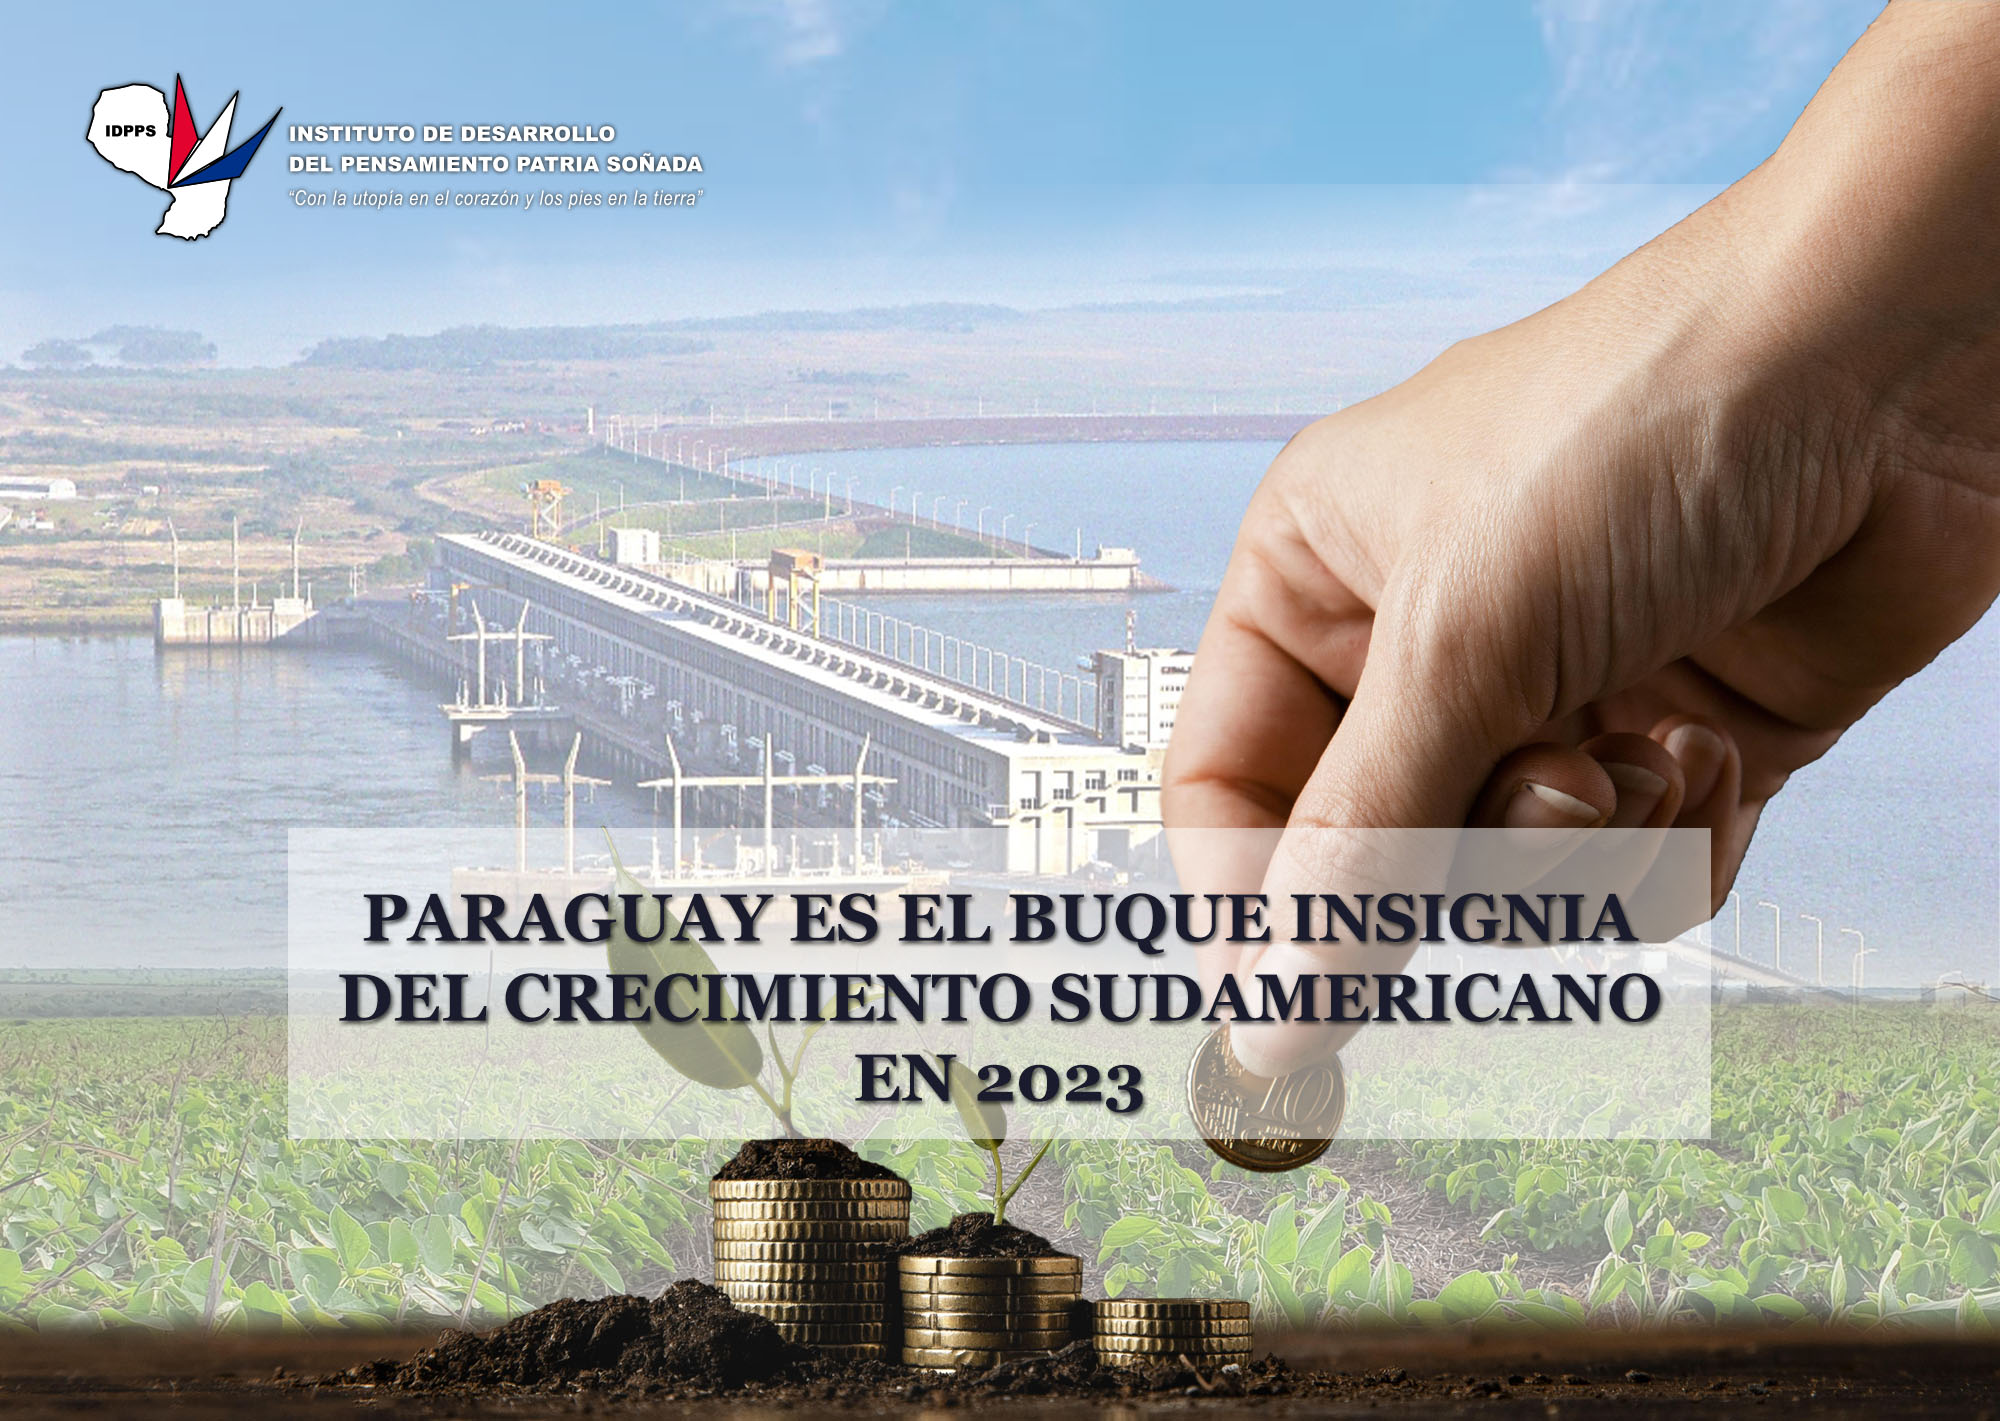 Paraguay es el buque insignia del crecimiento sudamericano en 2023